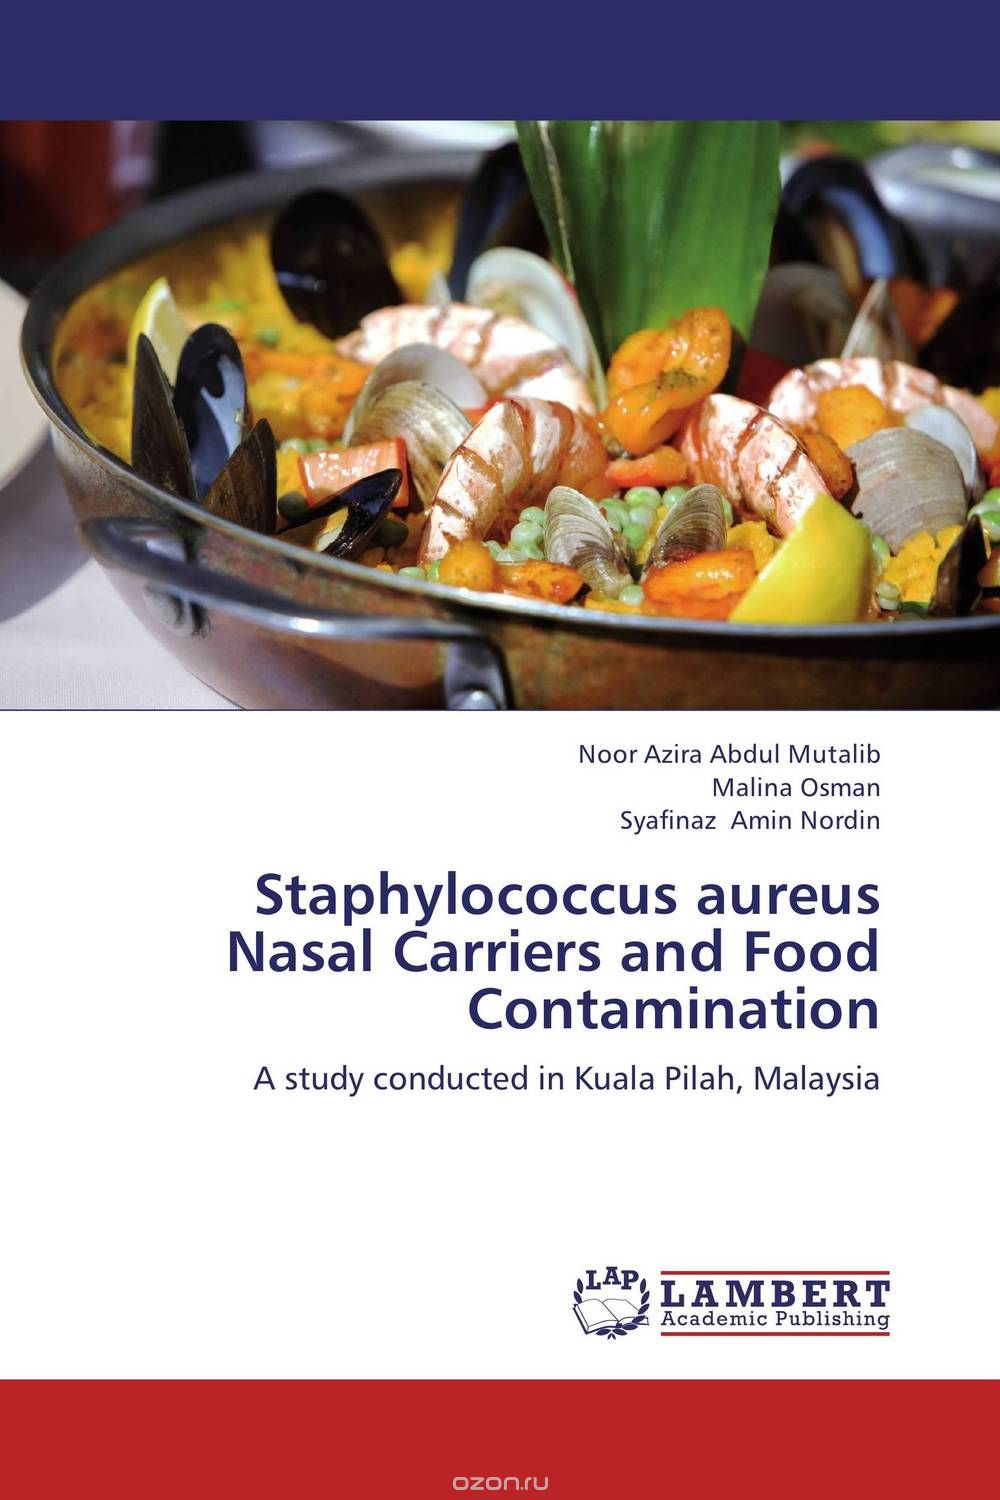 Скачать книгу "Staphylococcus aureus Nasal Carriers and Food Contamination"